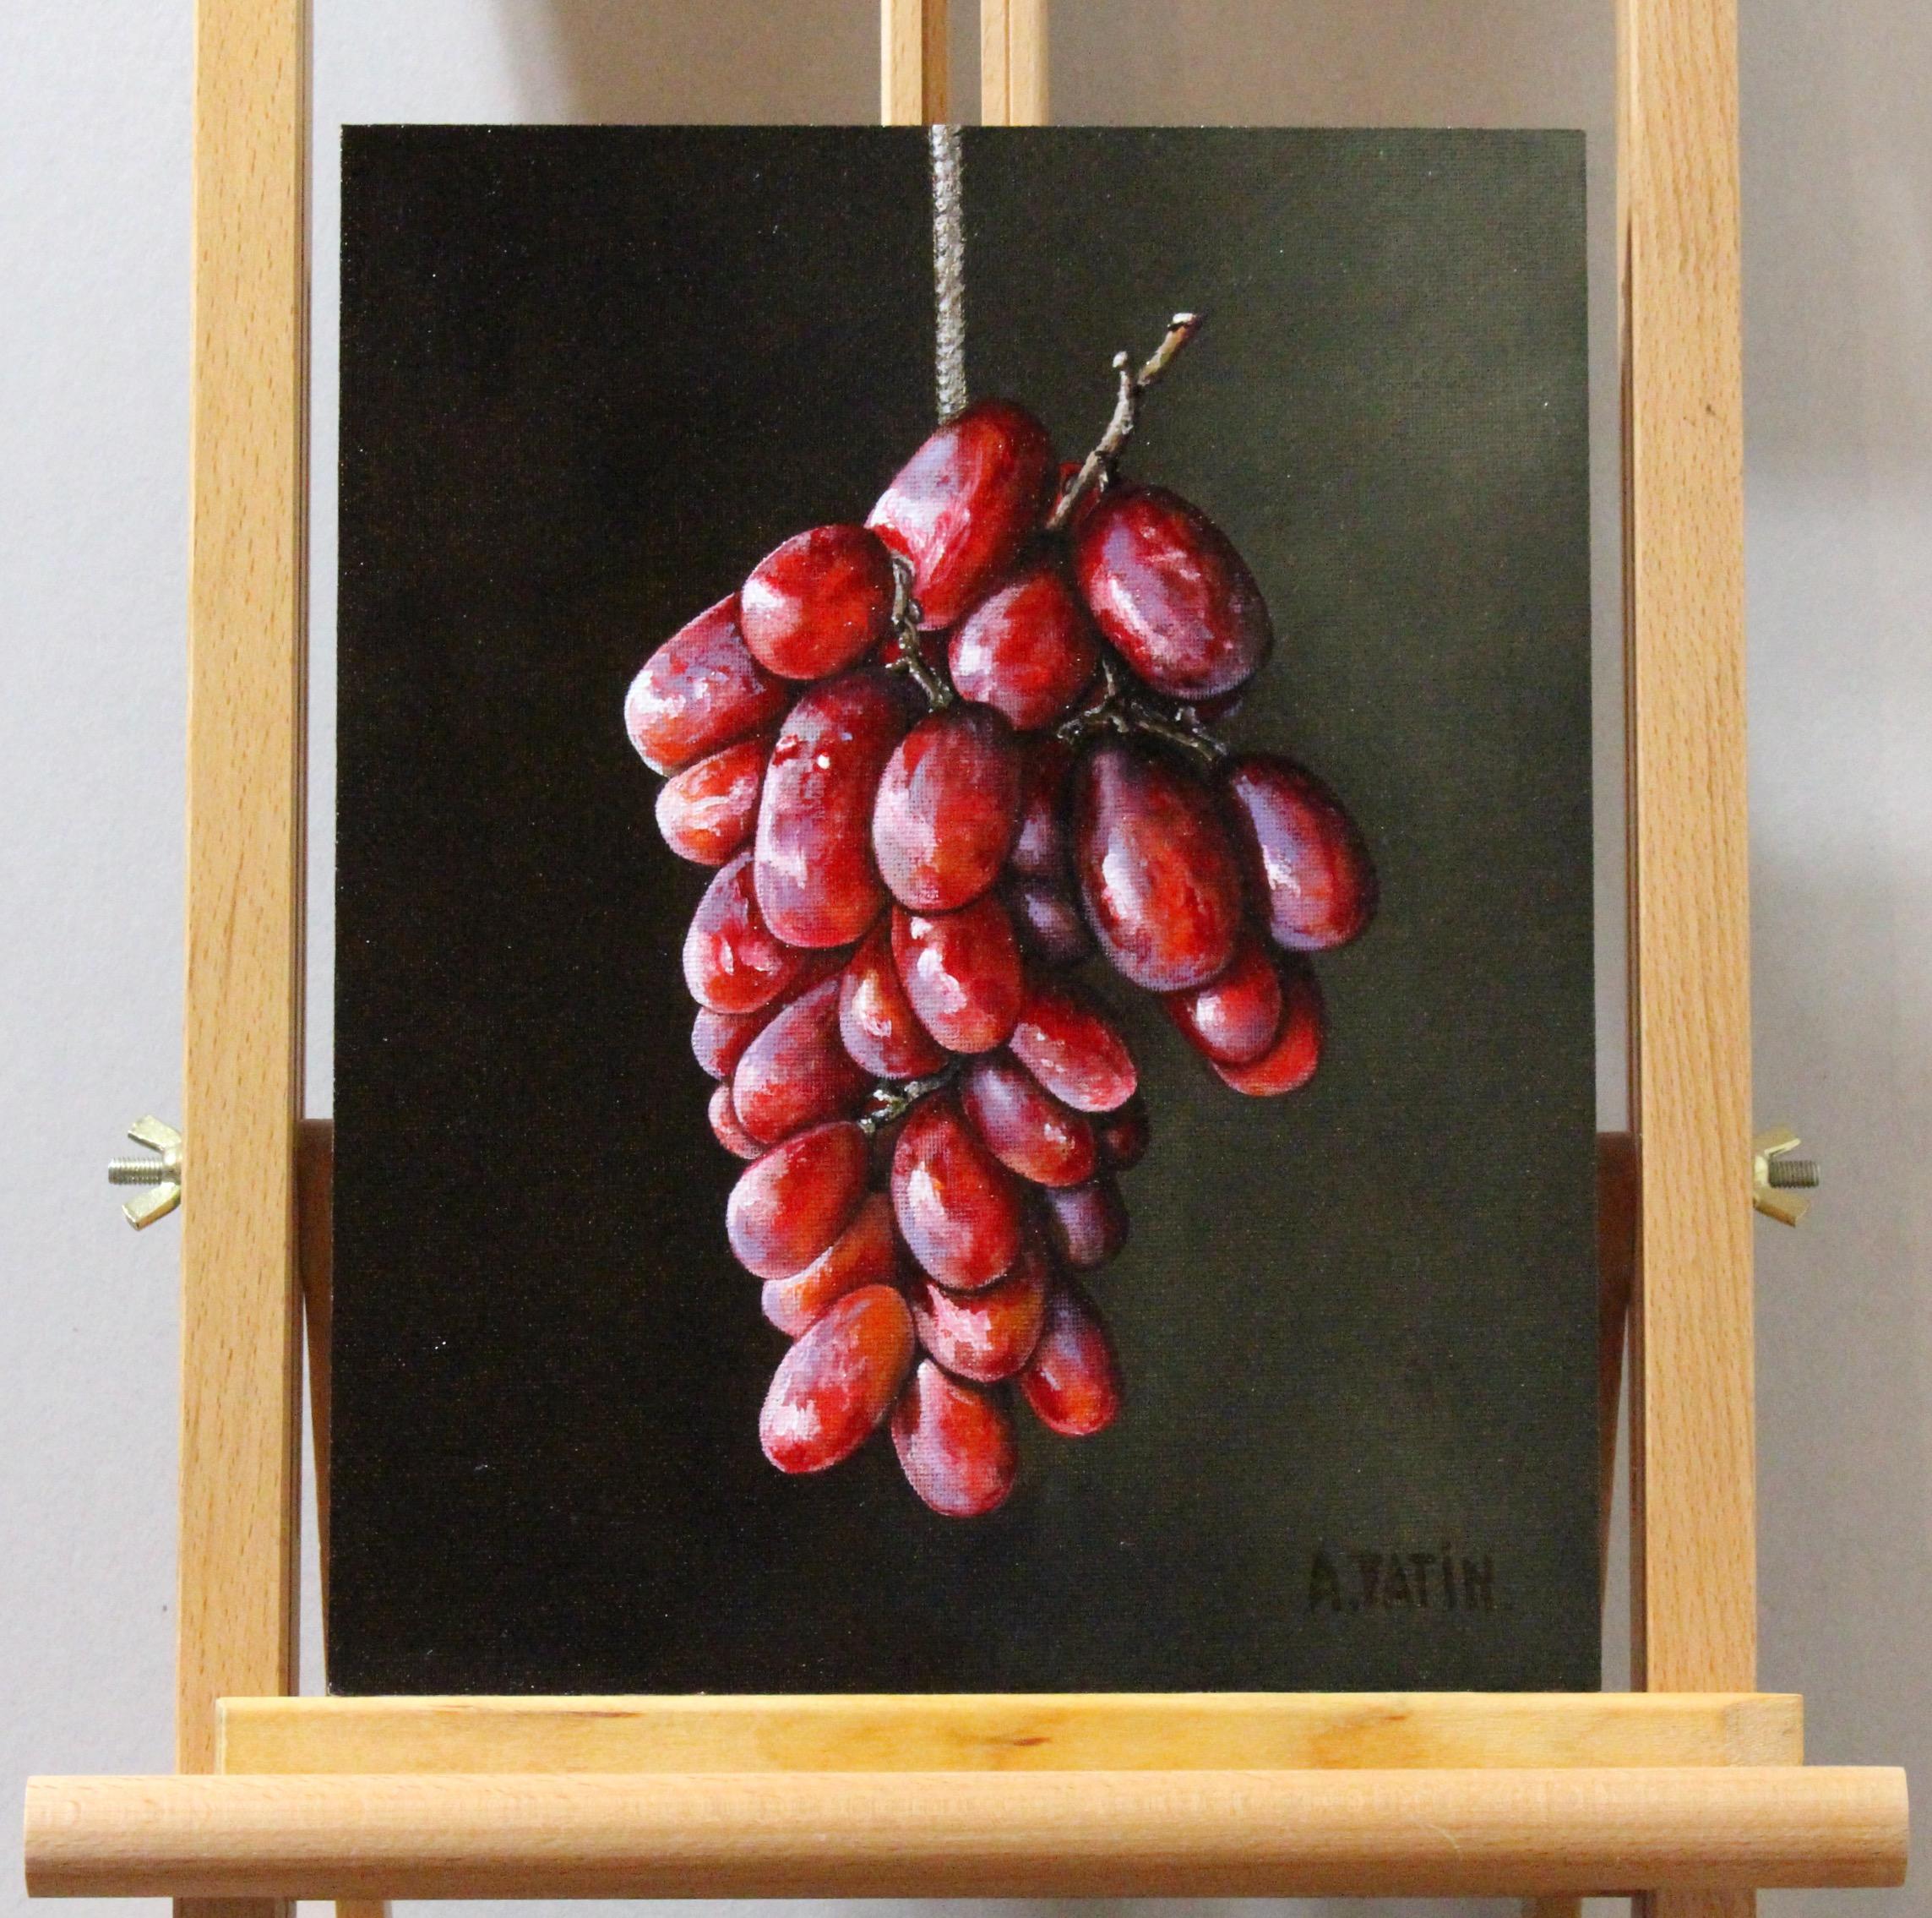 <p>Commentaires de l'artiste<br>Une grappe de raisin rouge s'illumine de l'intérieur, ressemblant à de minuscules ampoules électriques. L'œuvre d'art représente leur forme classique et leur translucidité avec des taches blanches et violettes sur